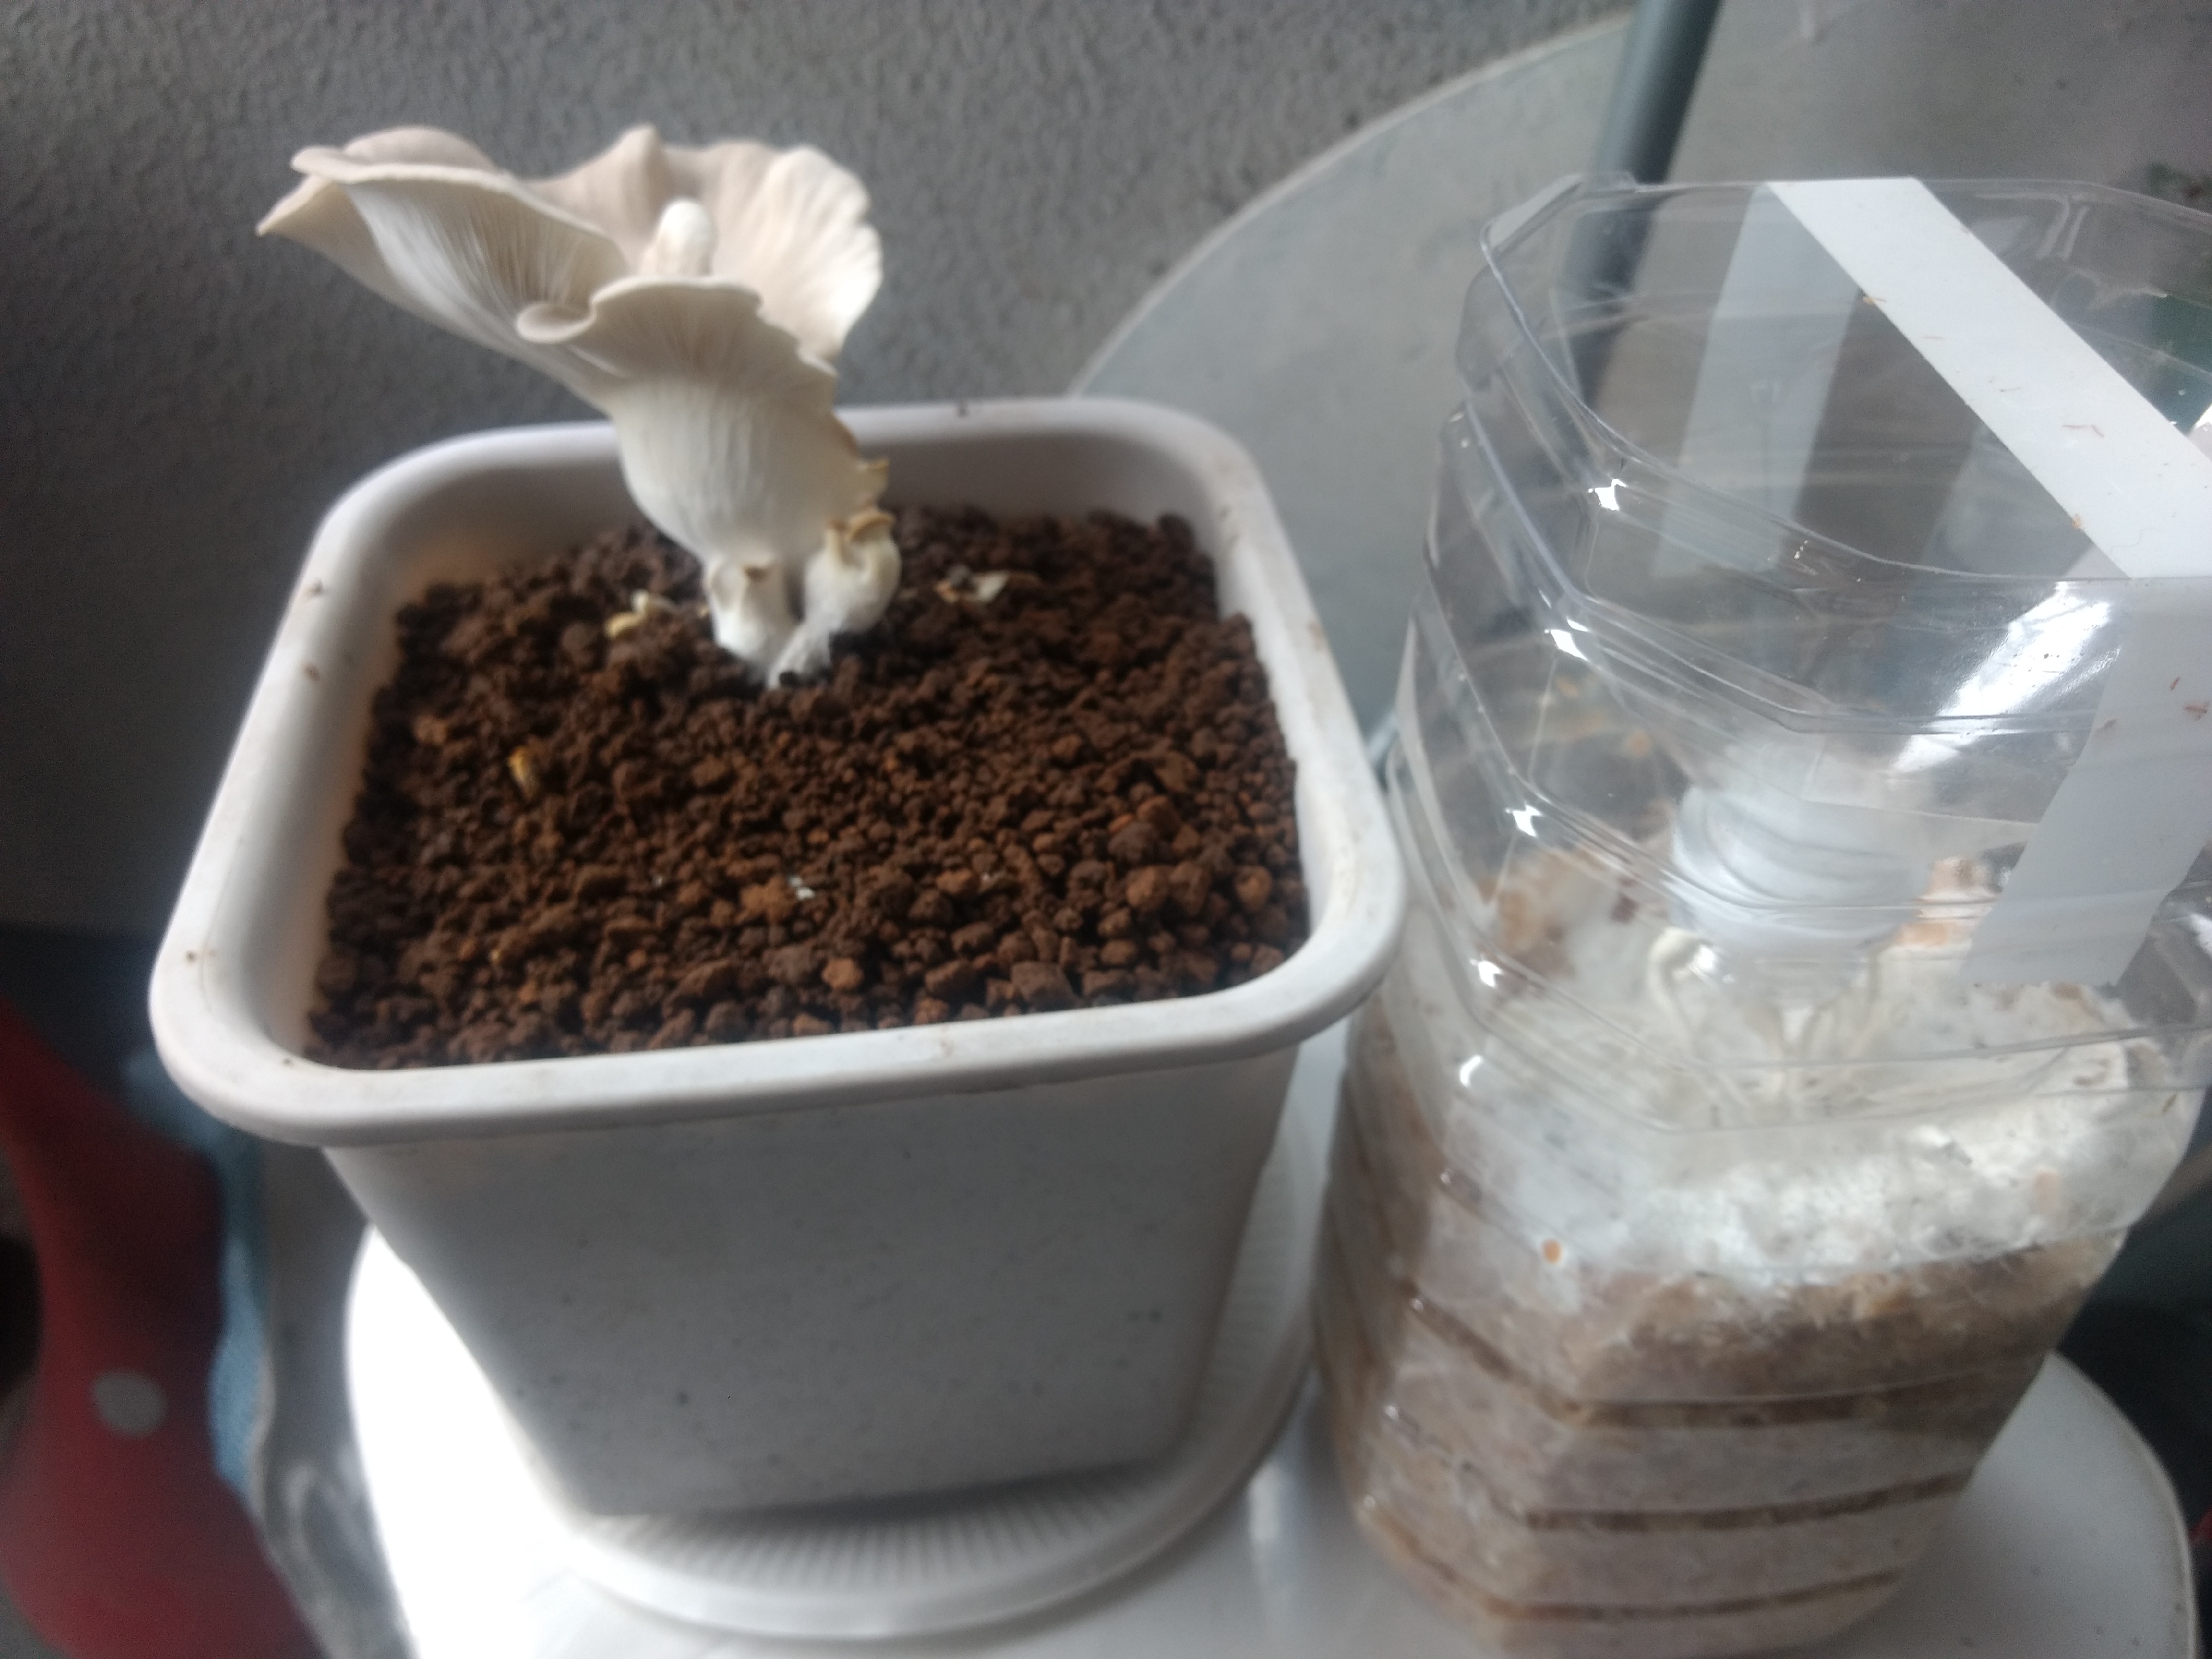 キノコの菌床栽培を試してみた